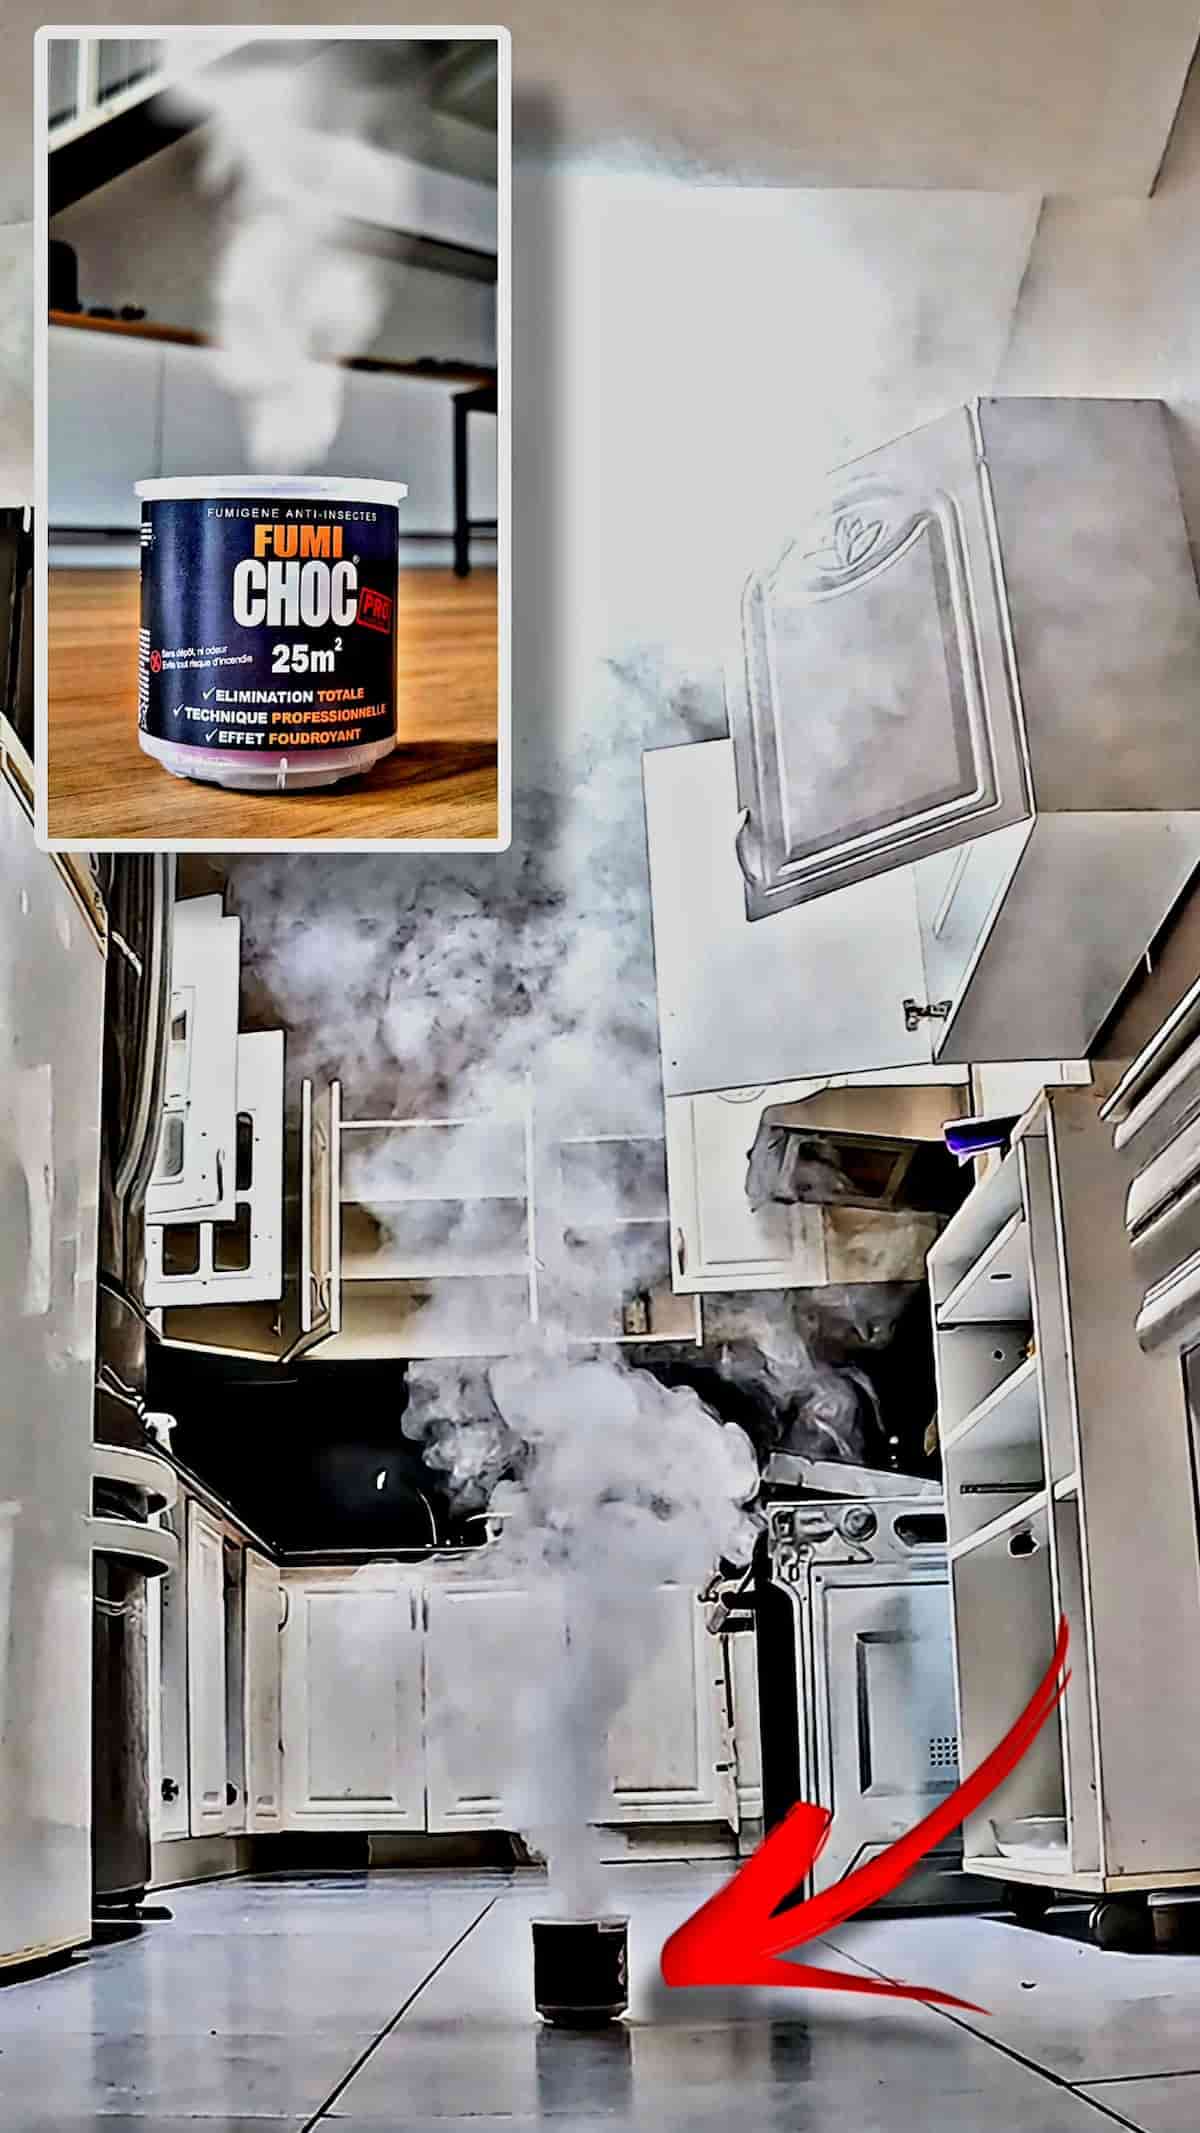 Dispersion de la fumée du FUMICHOC CAFARD dans une cuisine